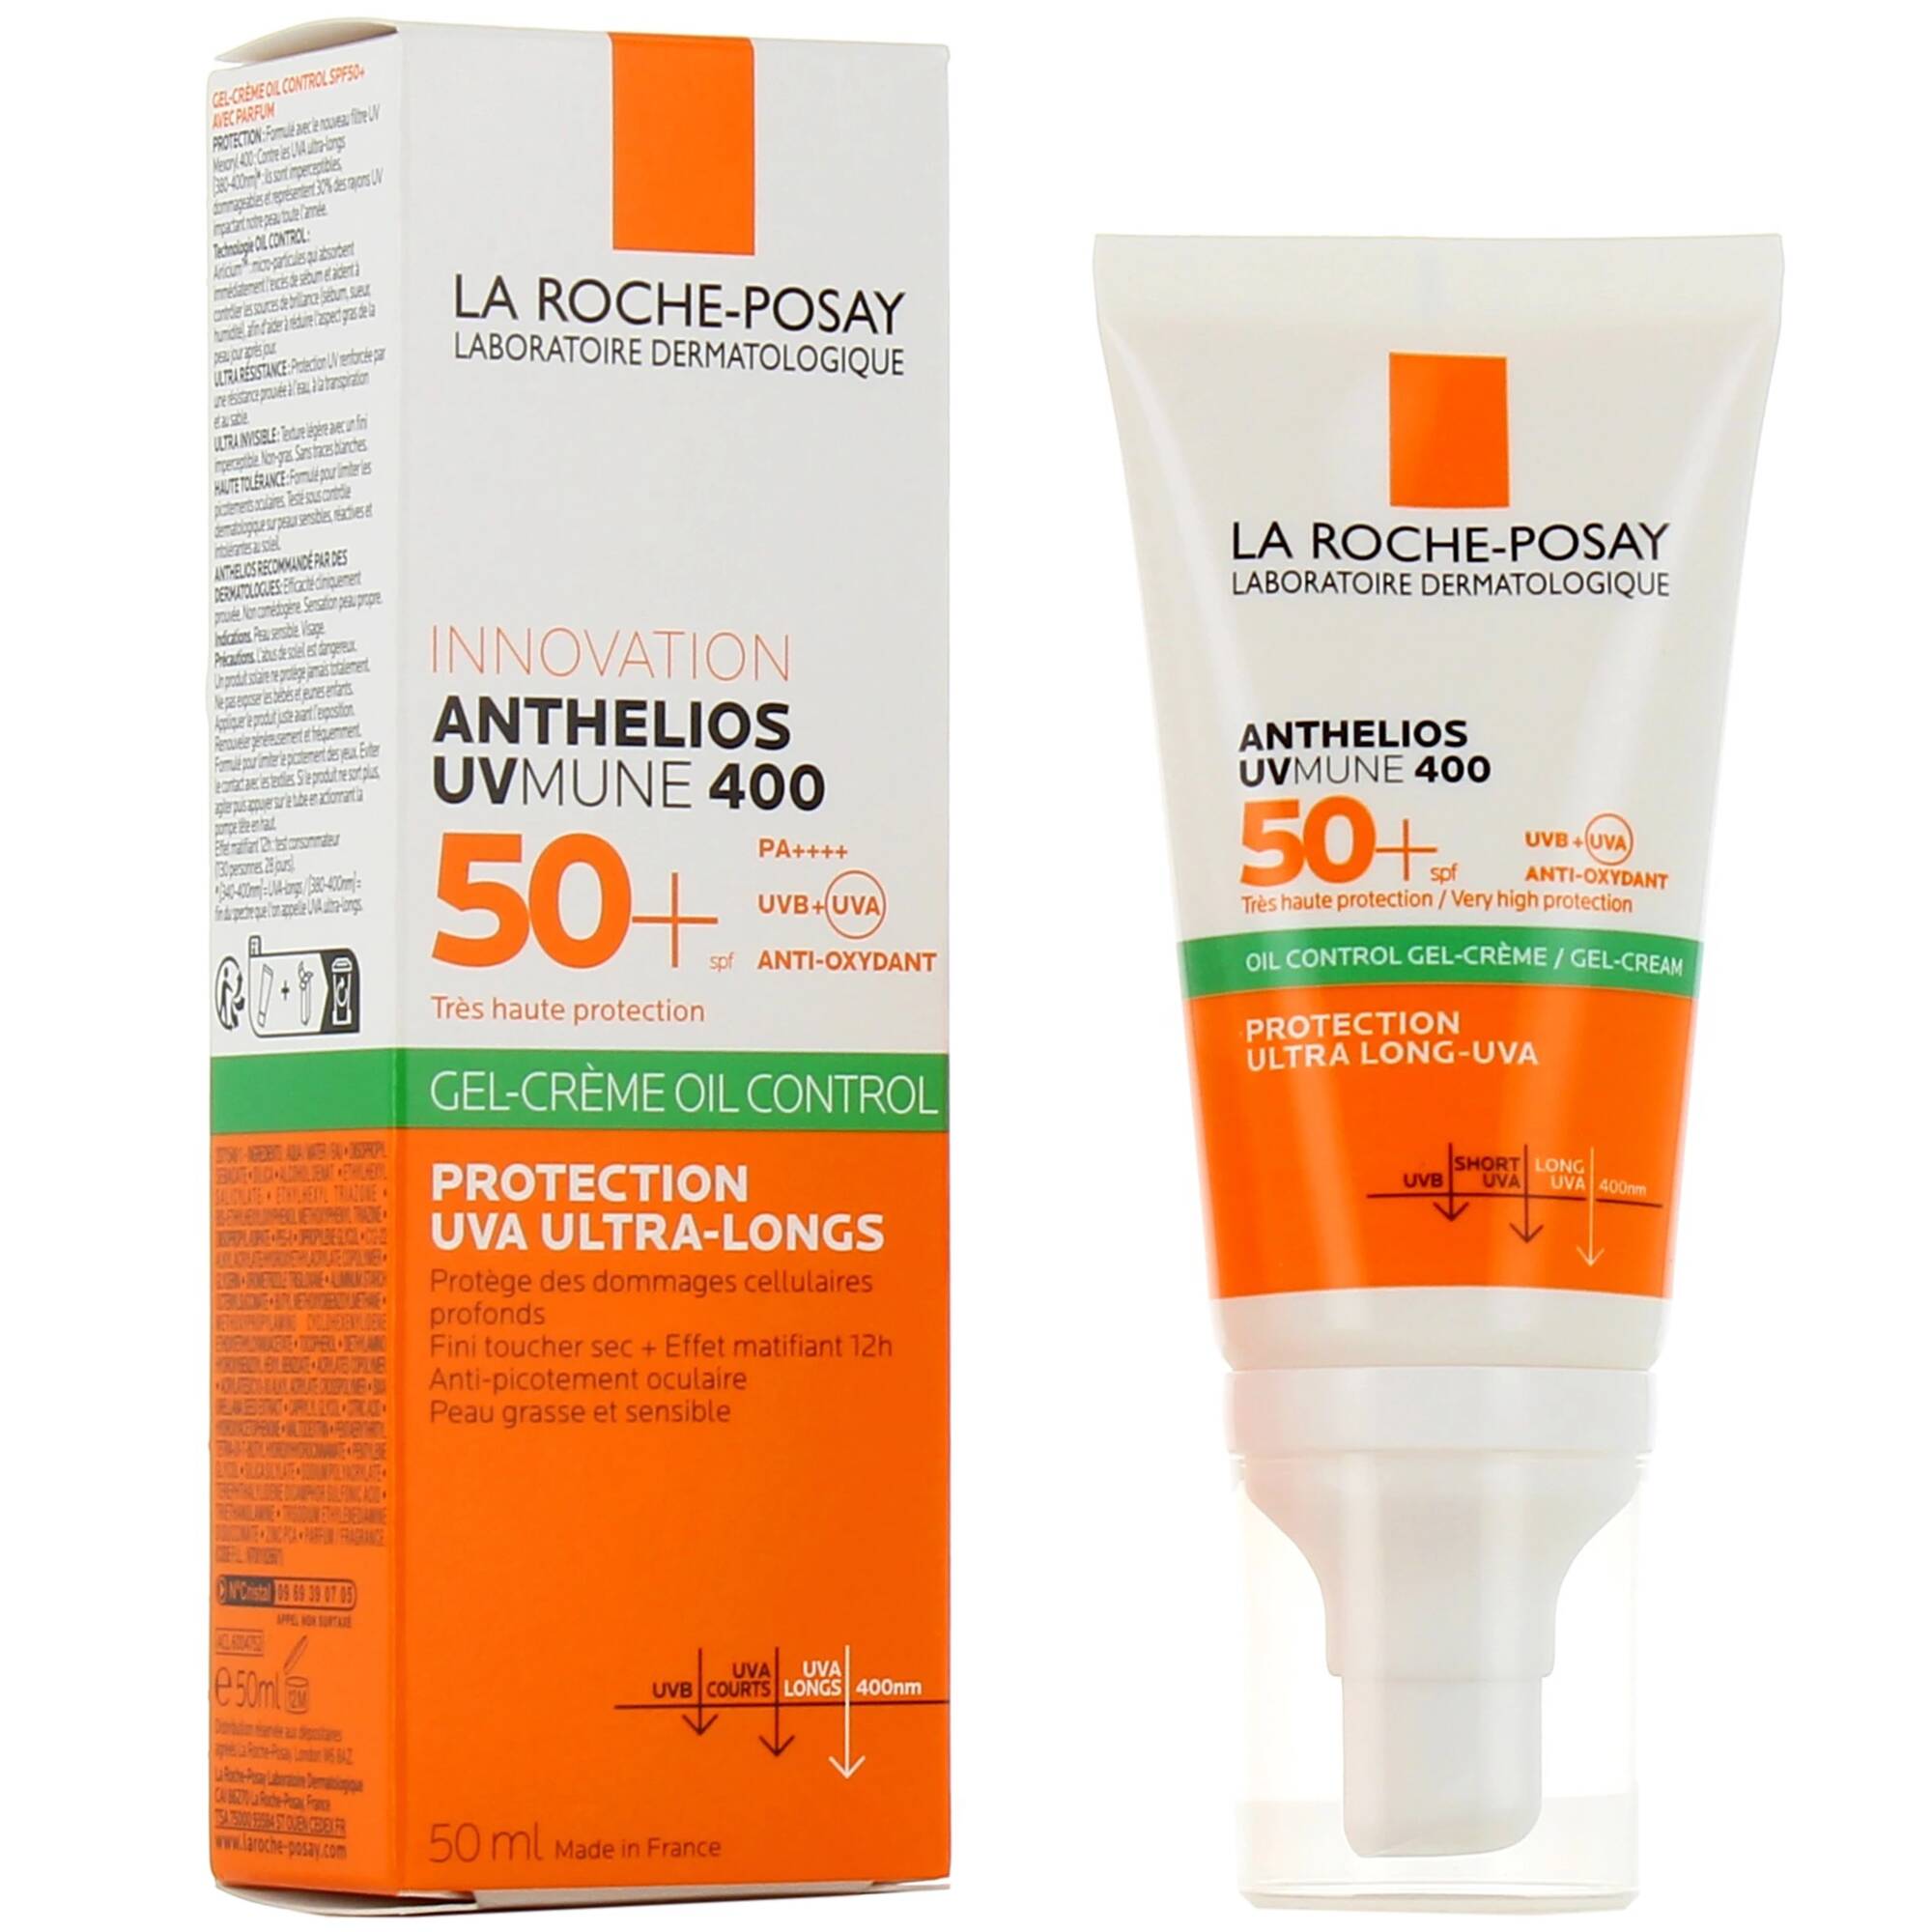 LA ROCHE-POSAY - Anthelios UVMune 400 Gel-Crème Oil Control SPF 50+